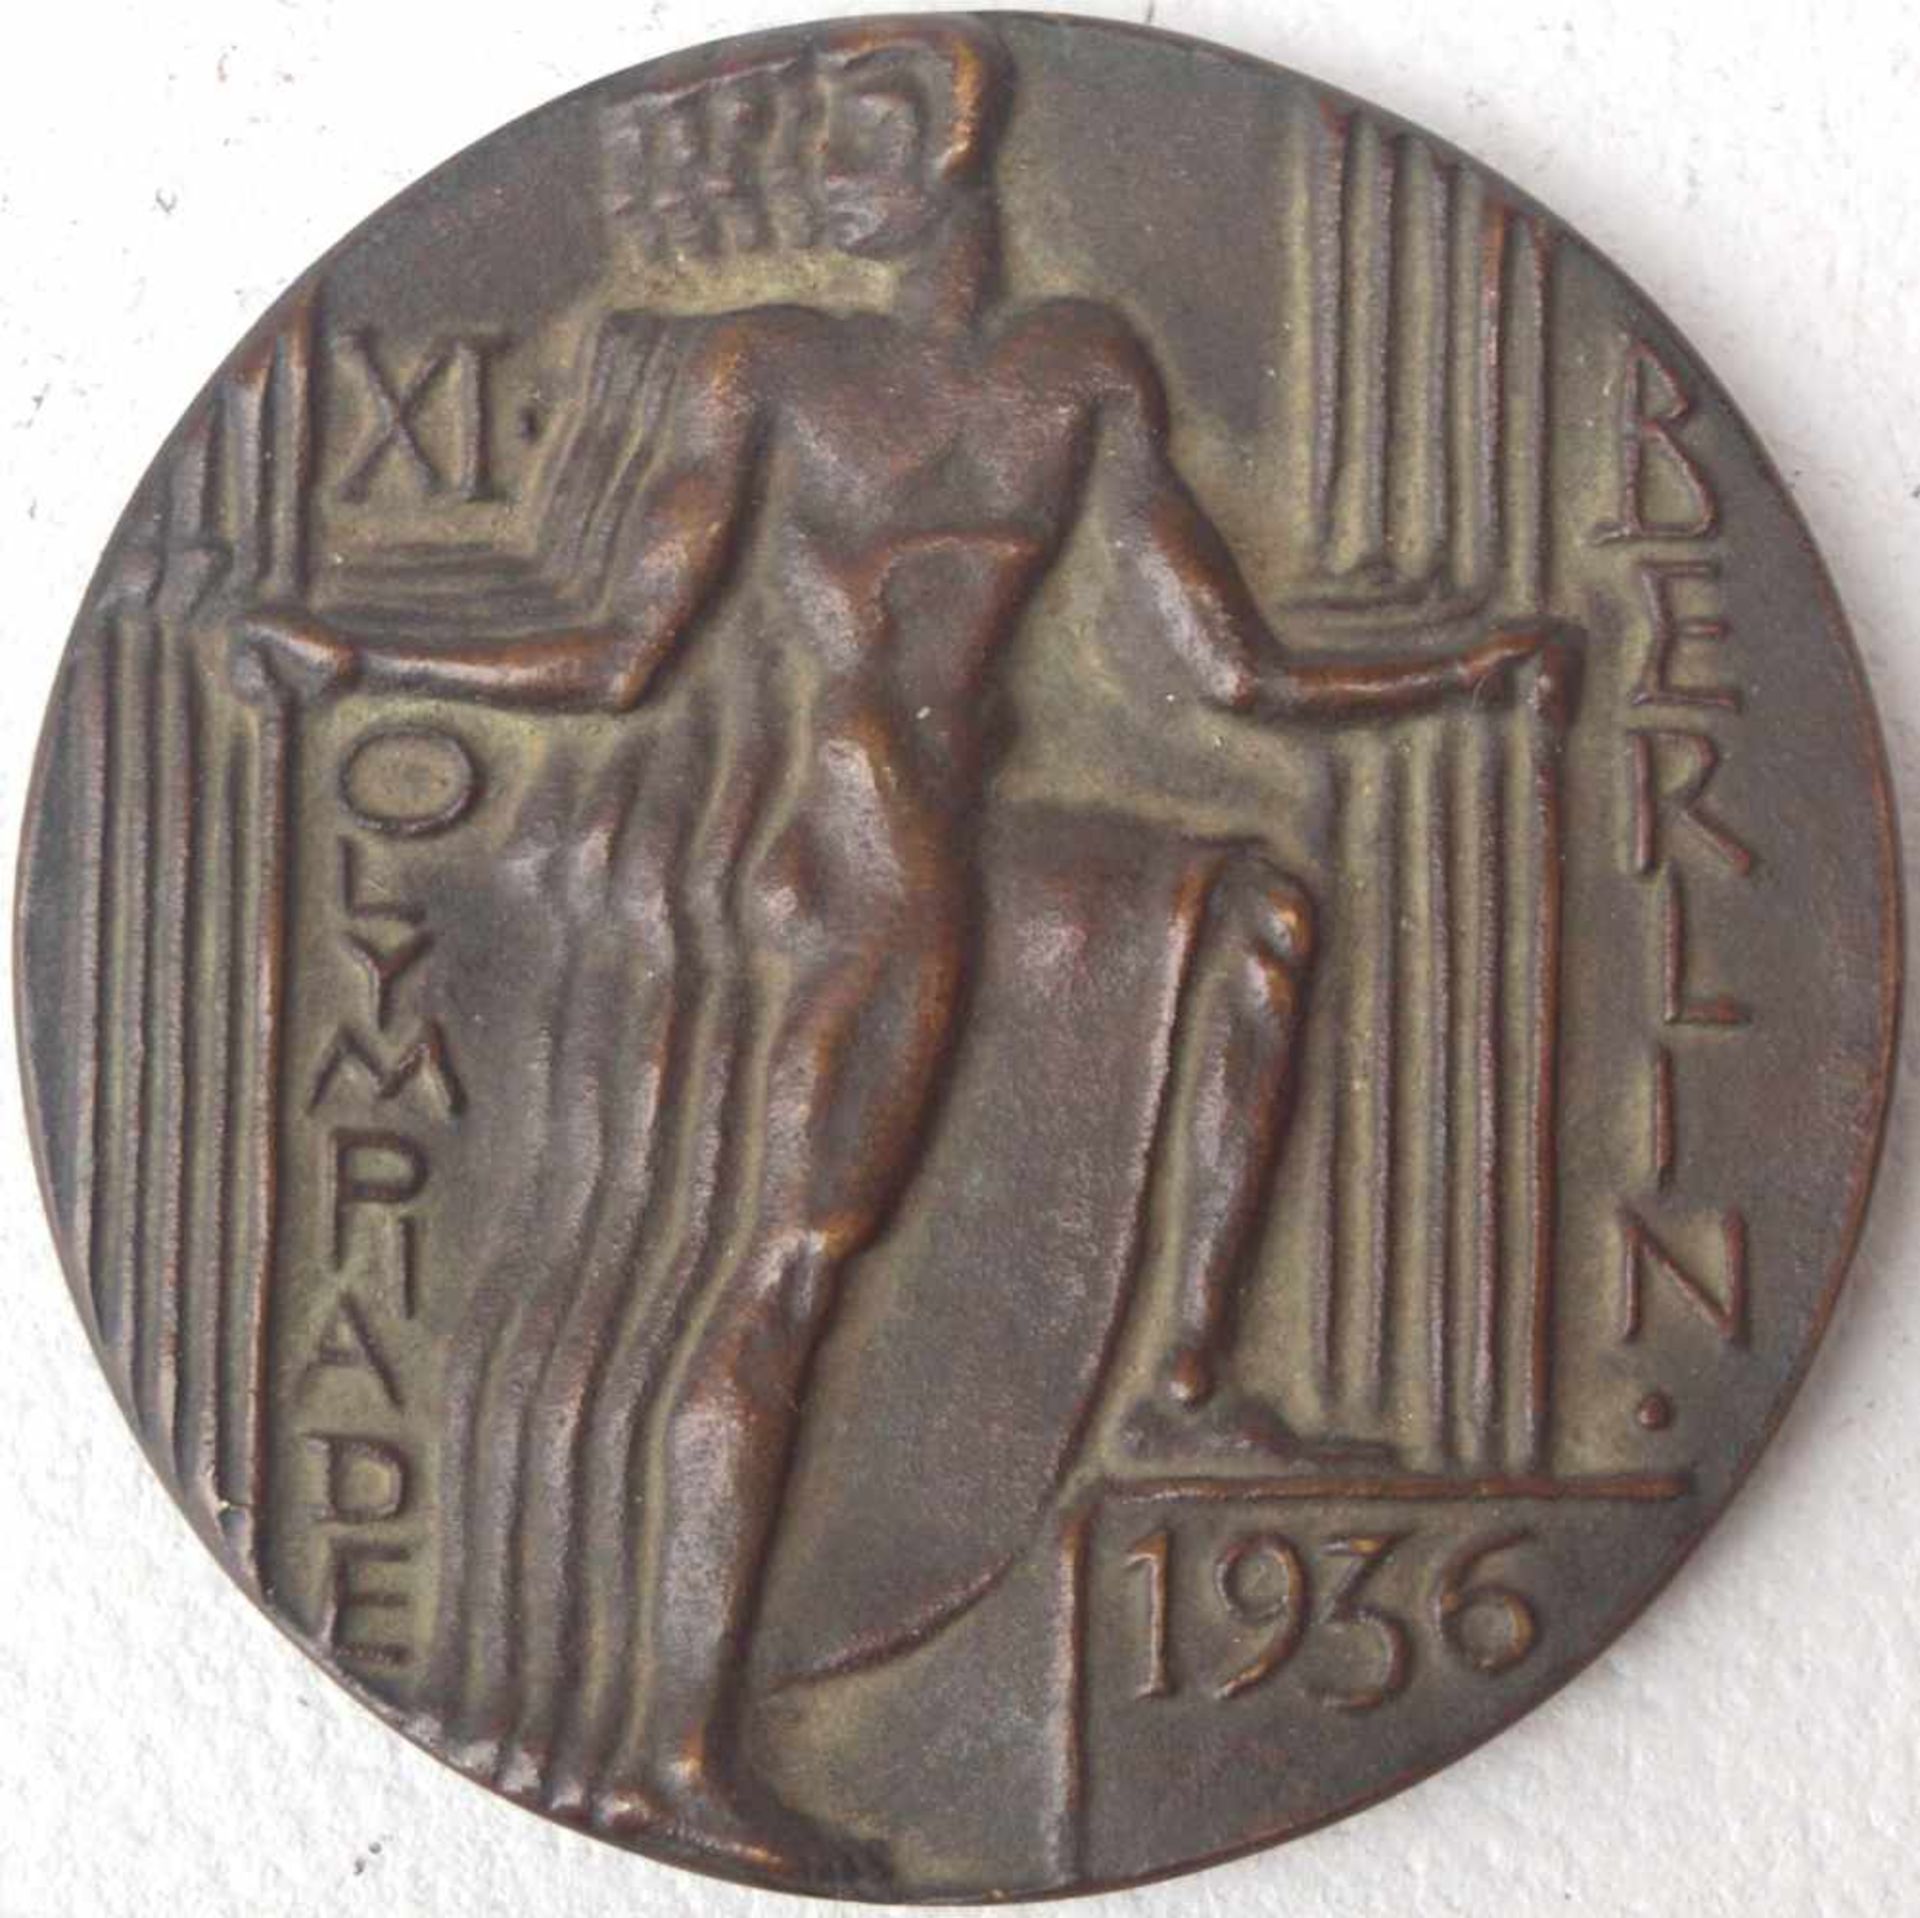 Orig. Bronzemedaille der Olympischen Spiele in Berlin 1936 Berlin 1936, Bronze-Bronzemedaille